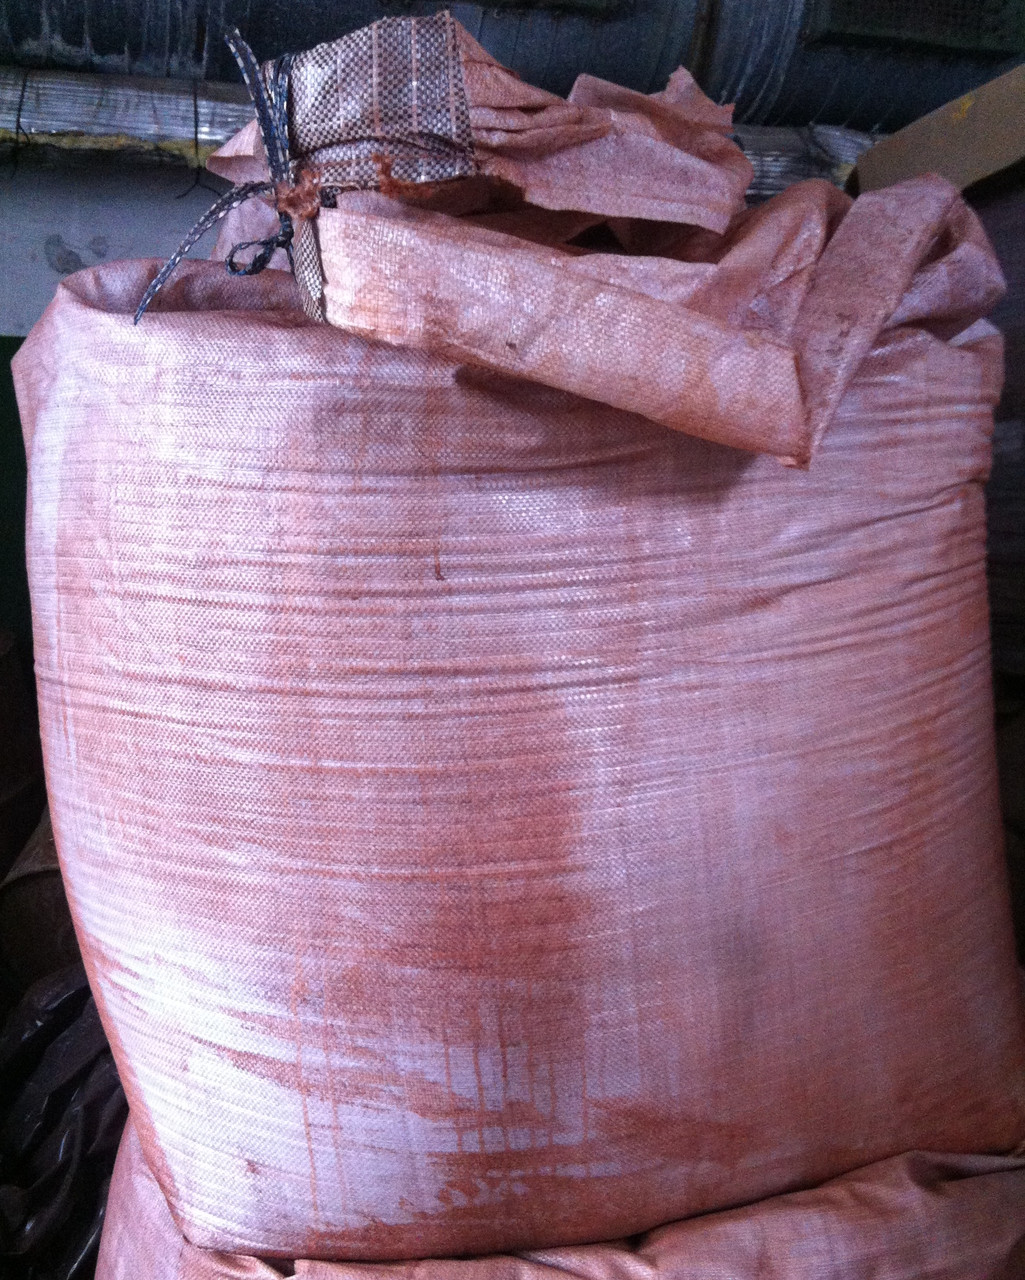 Сурик залізний сухий червоно-коричневий для грунтовок, фарб, розчинів та бетонів